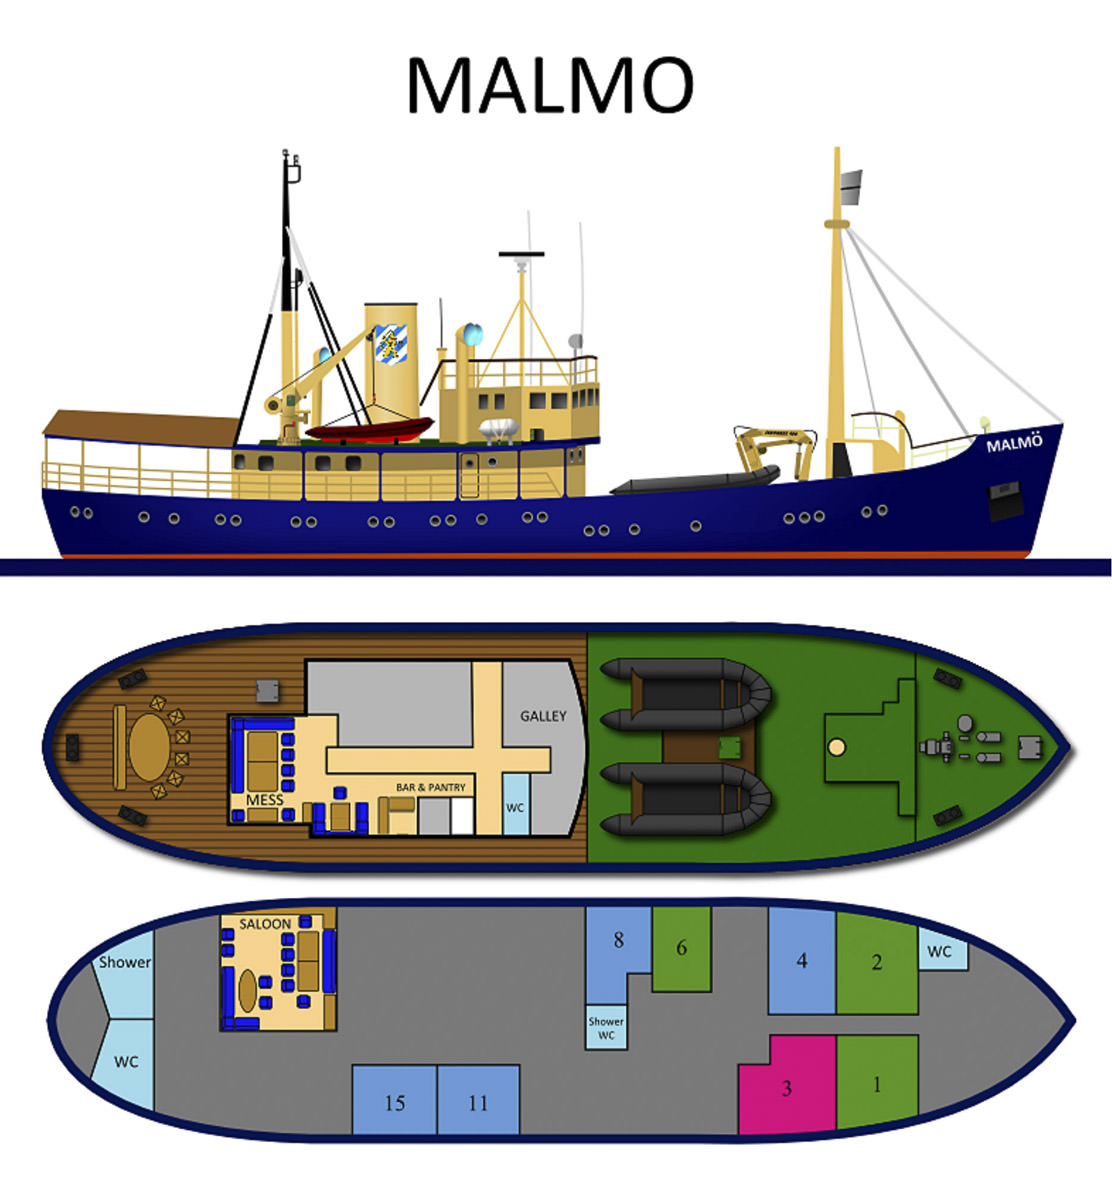 MS Malmö cabins